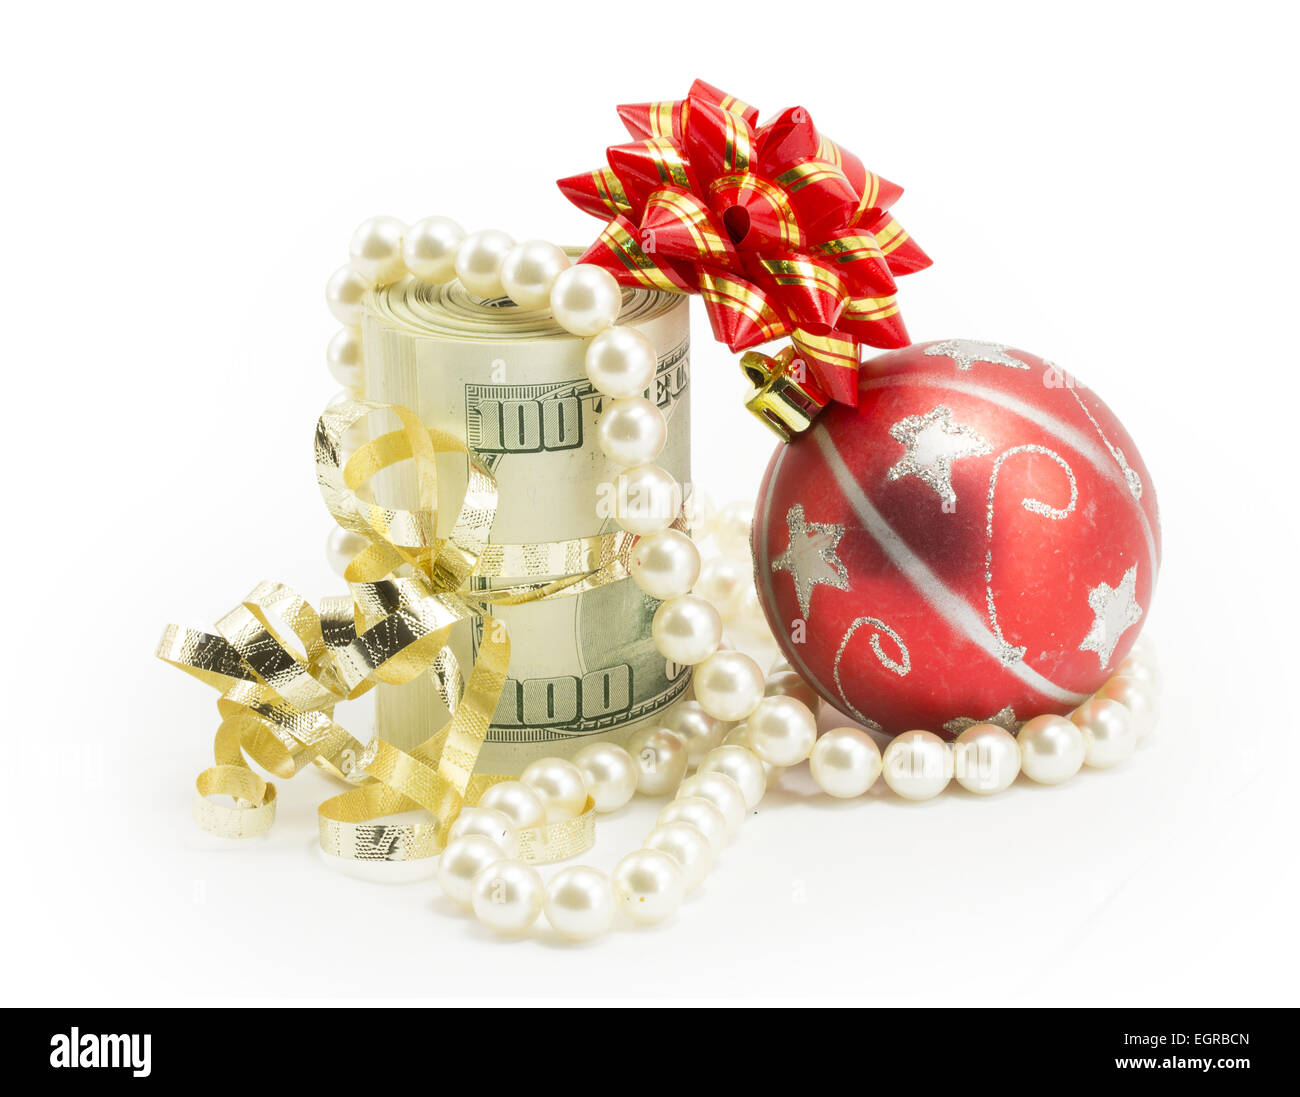 money, dollars isolated on white background Stock Photo